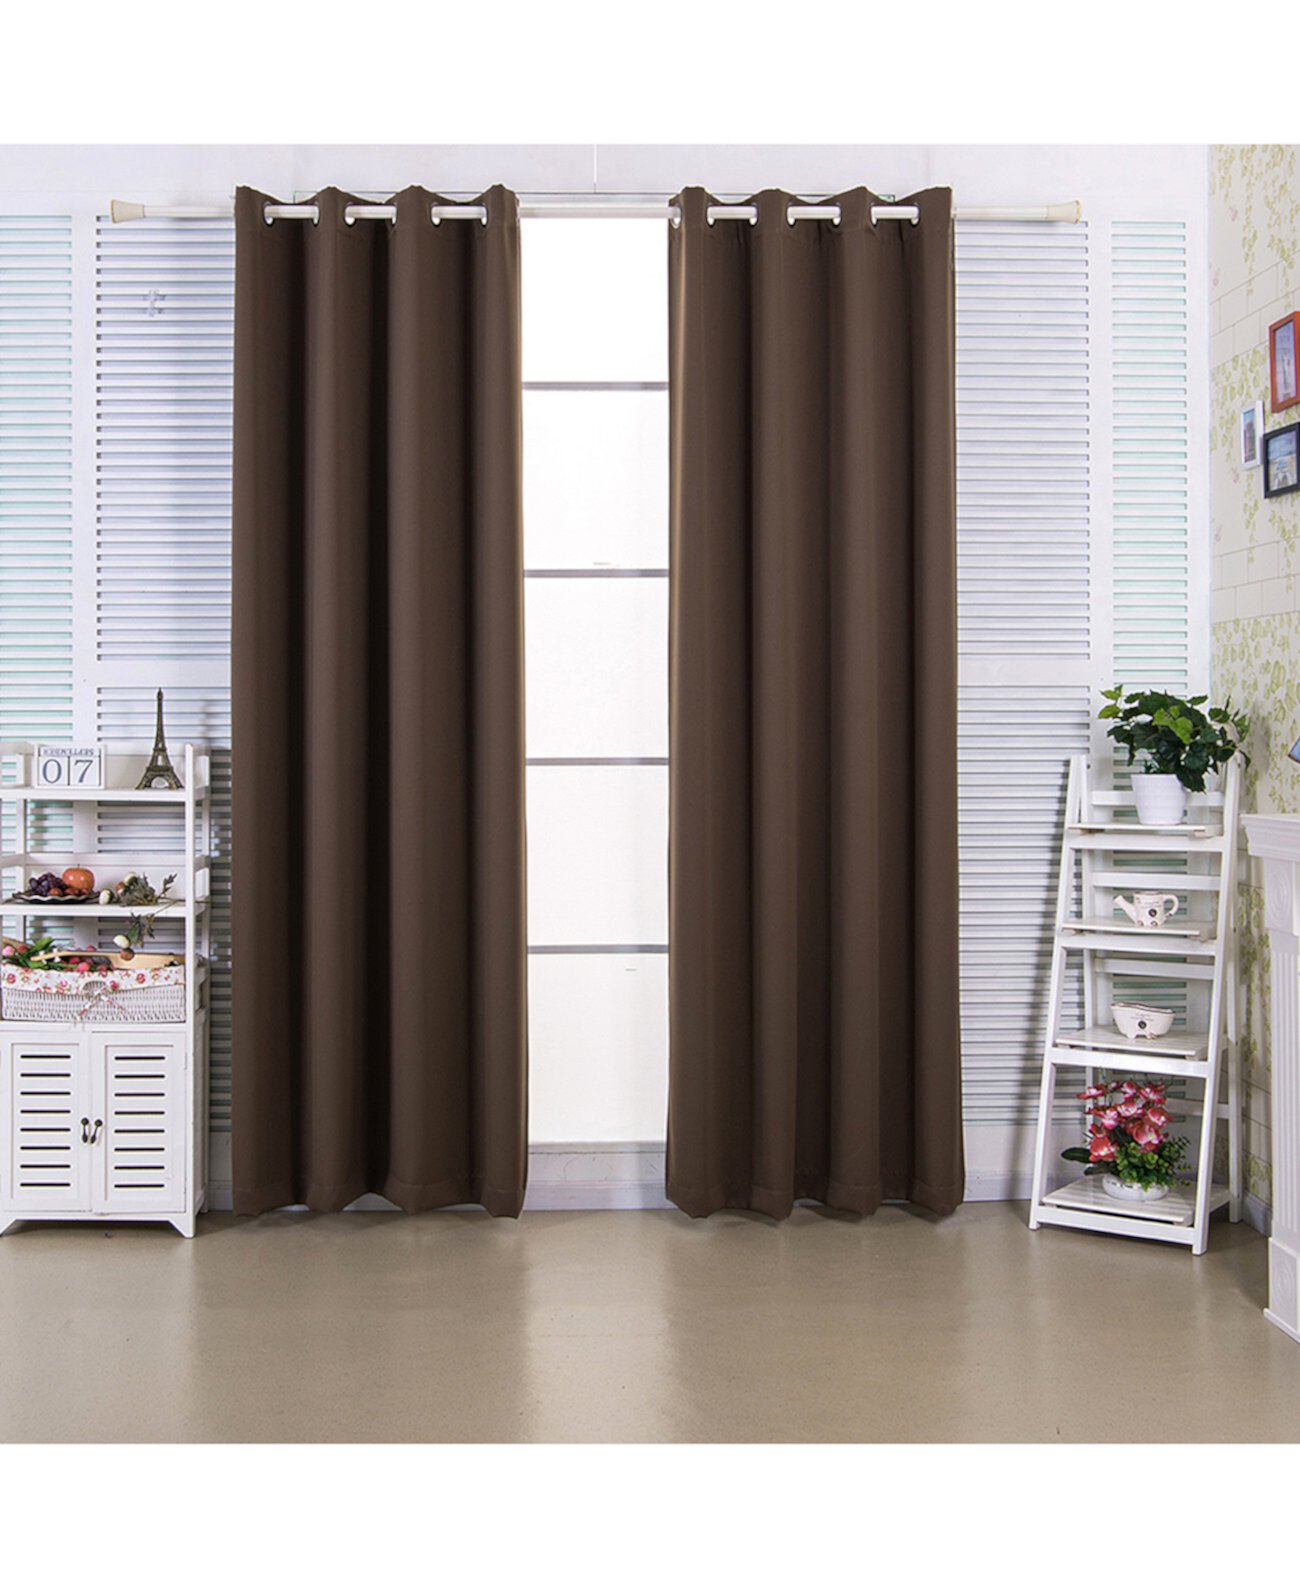 96-дюймовые оконные панели с плотной изоляцией Edessa Premium с термоизоляционными люверсами, орехово-коричневый цвет Elegant Home Fashions